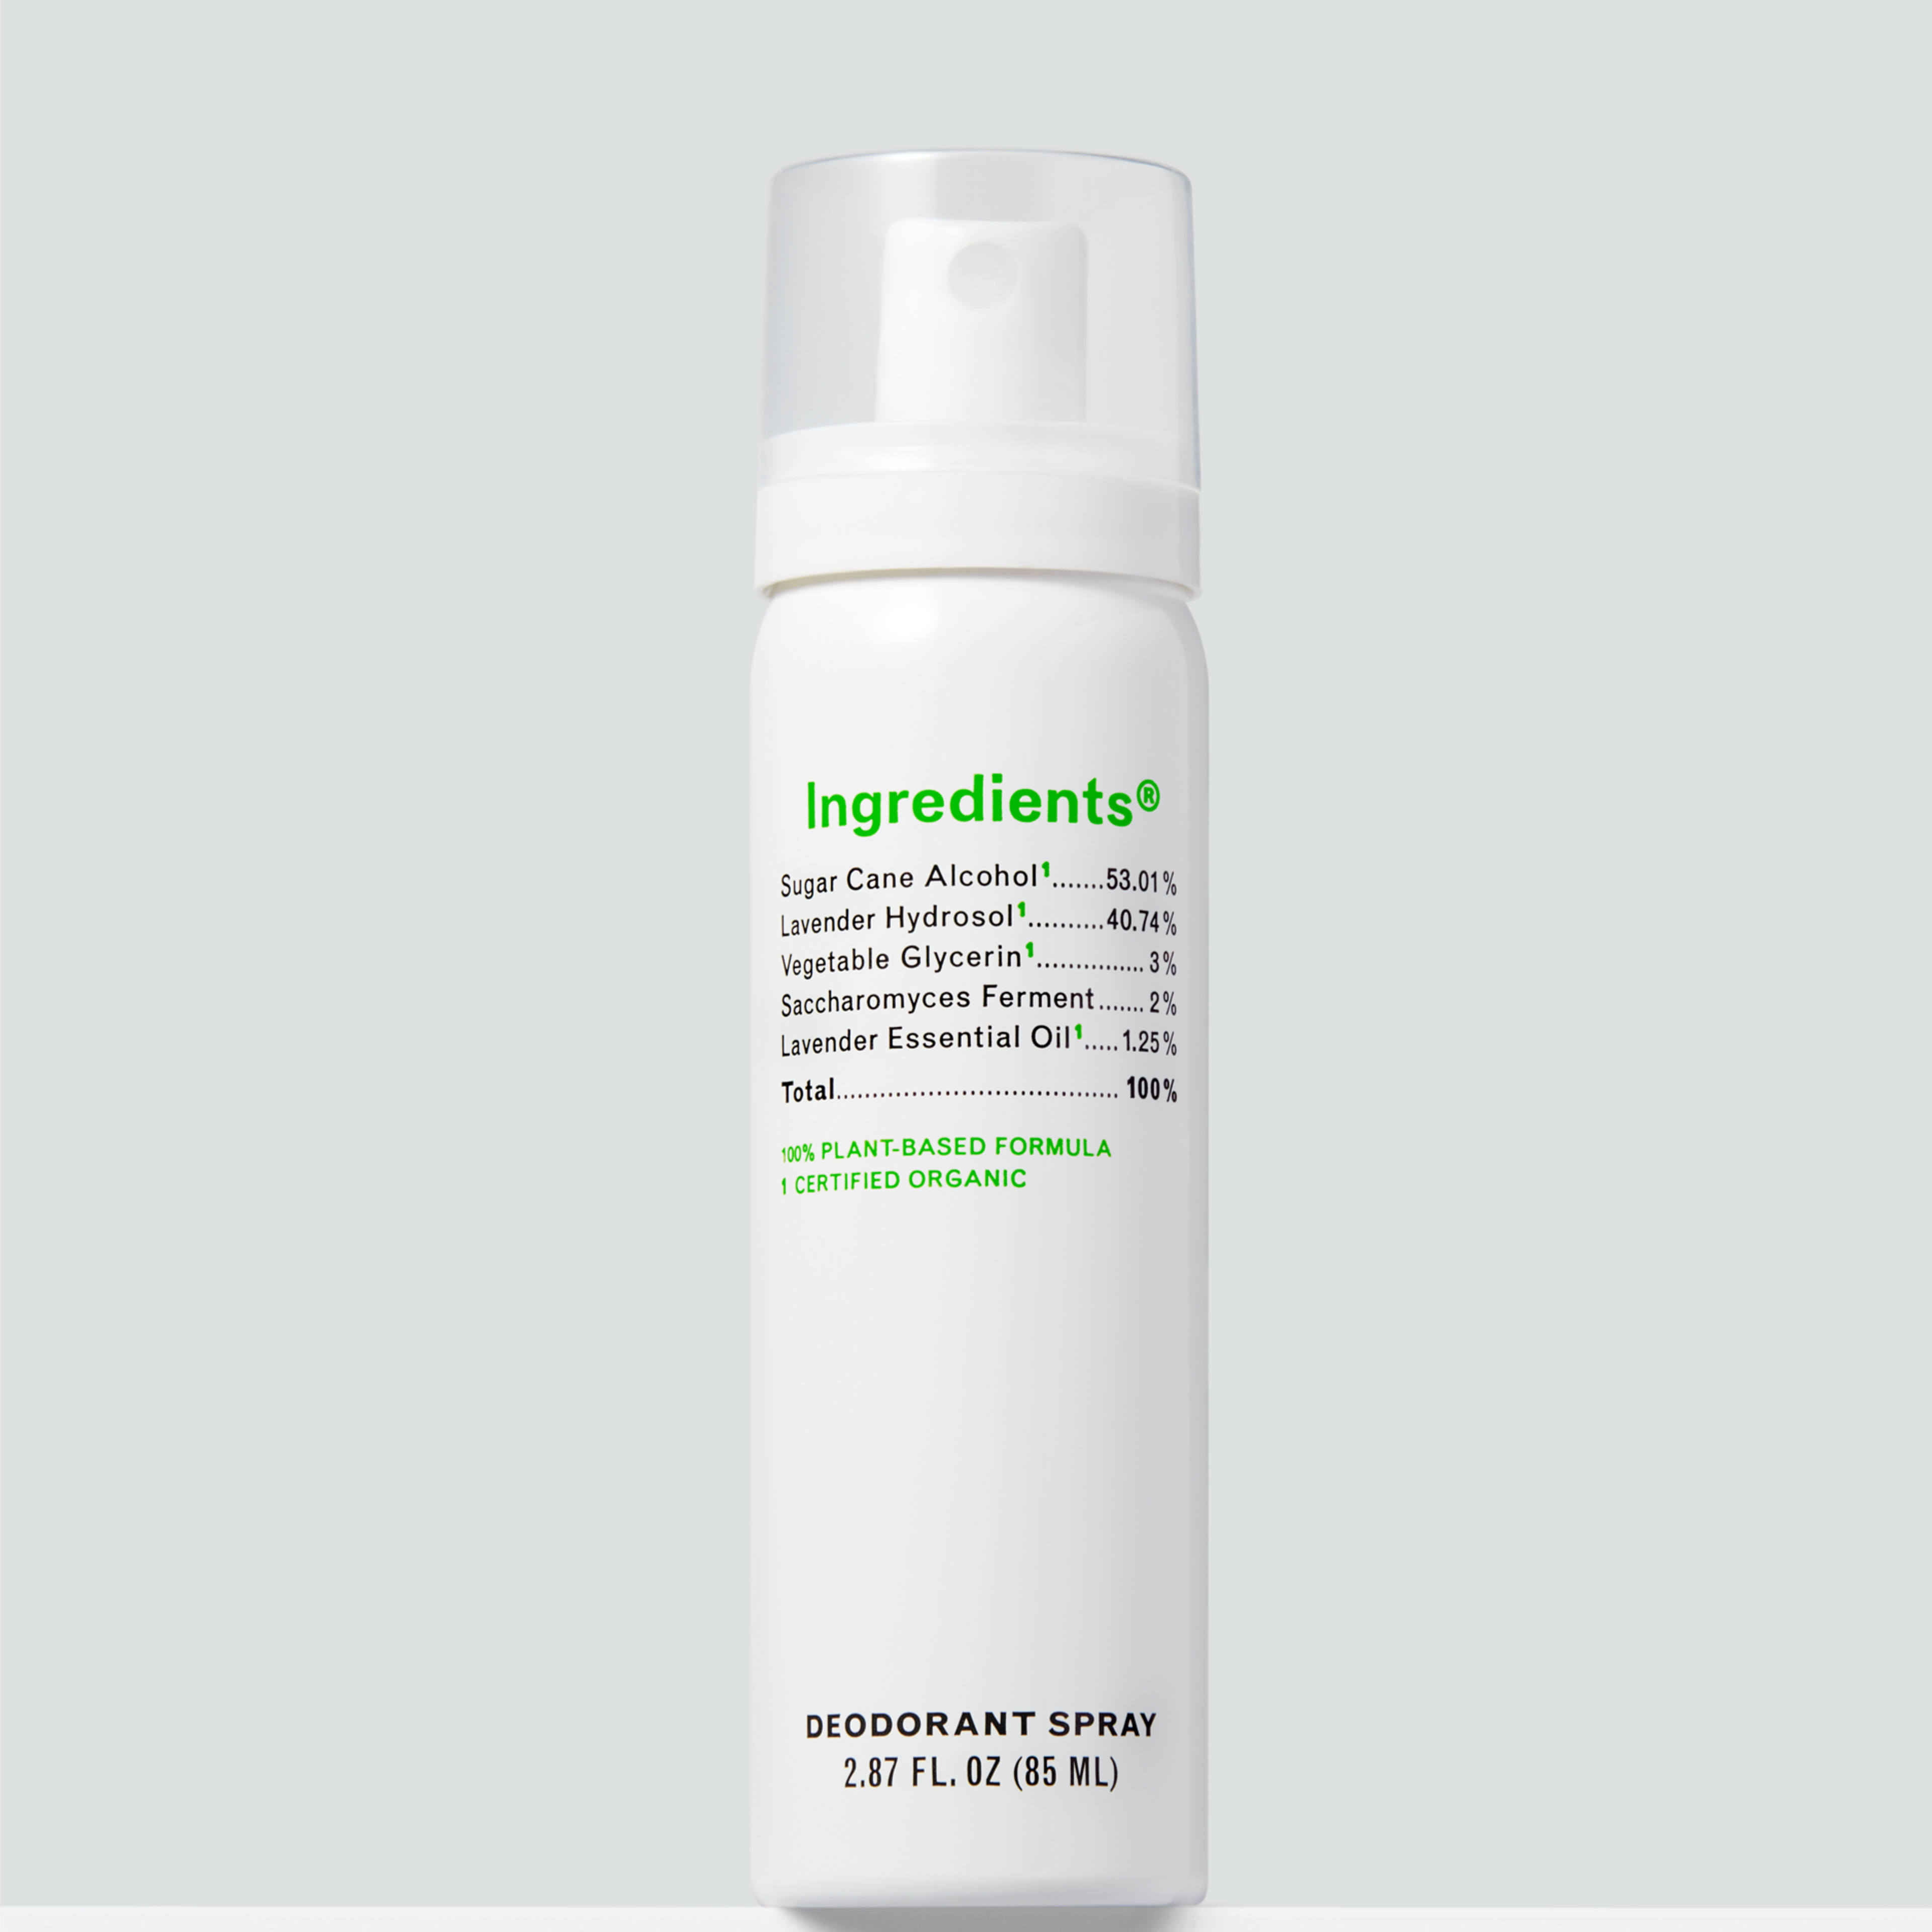 www.ingredientswellness.com/products/deodorant-spray